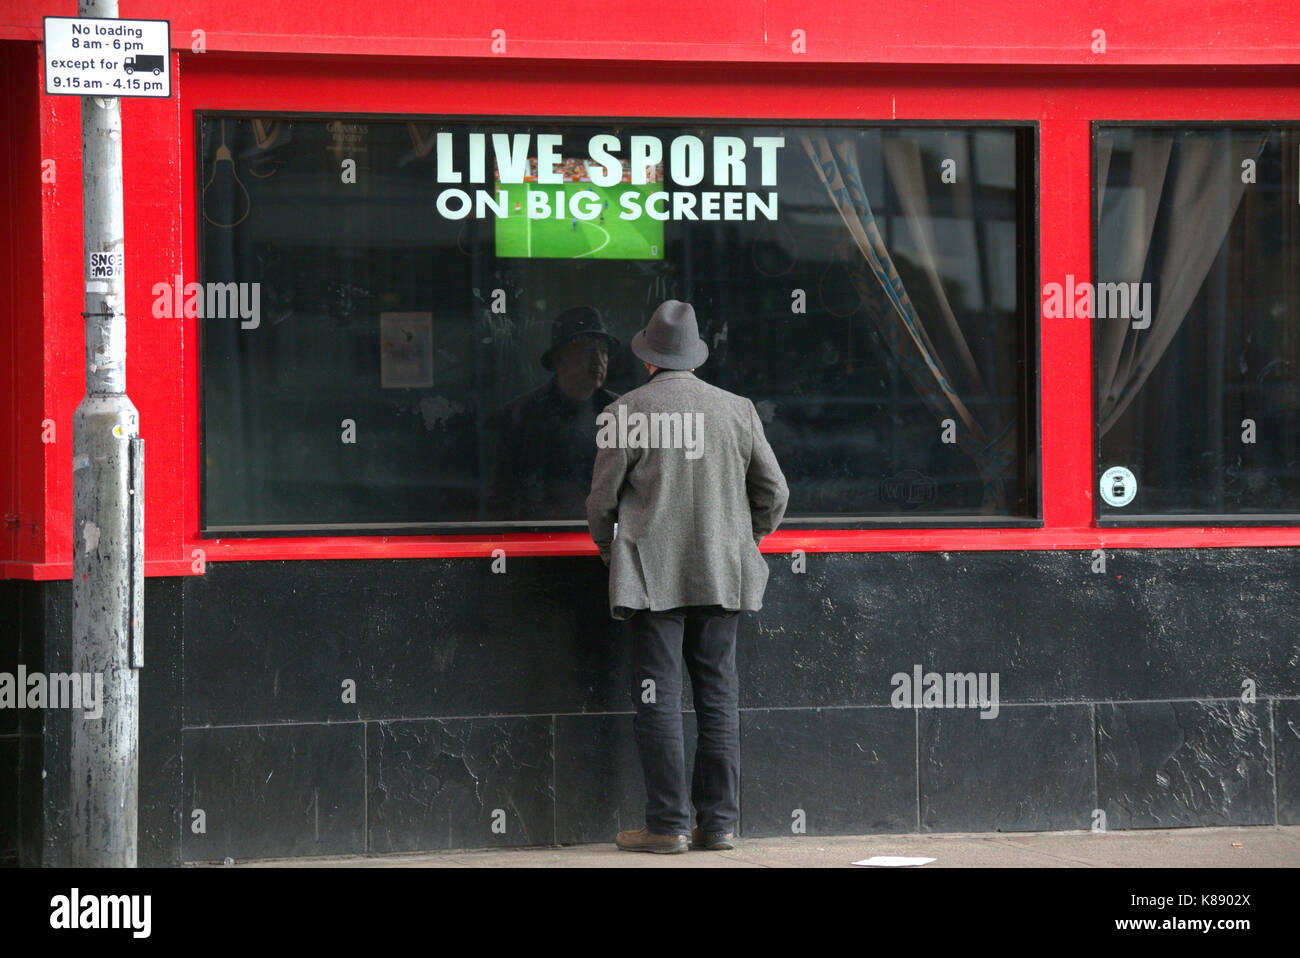 Menschen auf der Straße beobachten Live-Sport im TV kostenlos rote Pub an der Wand den ganzen Tag Menü Stockfoto